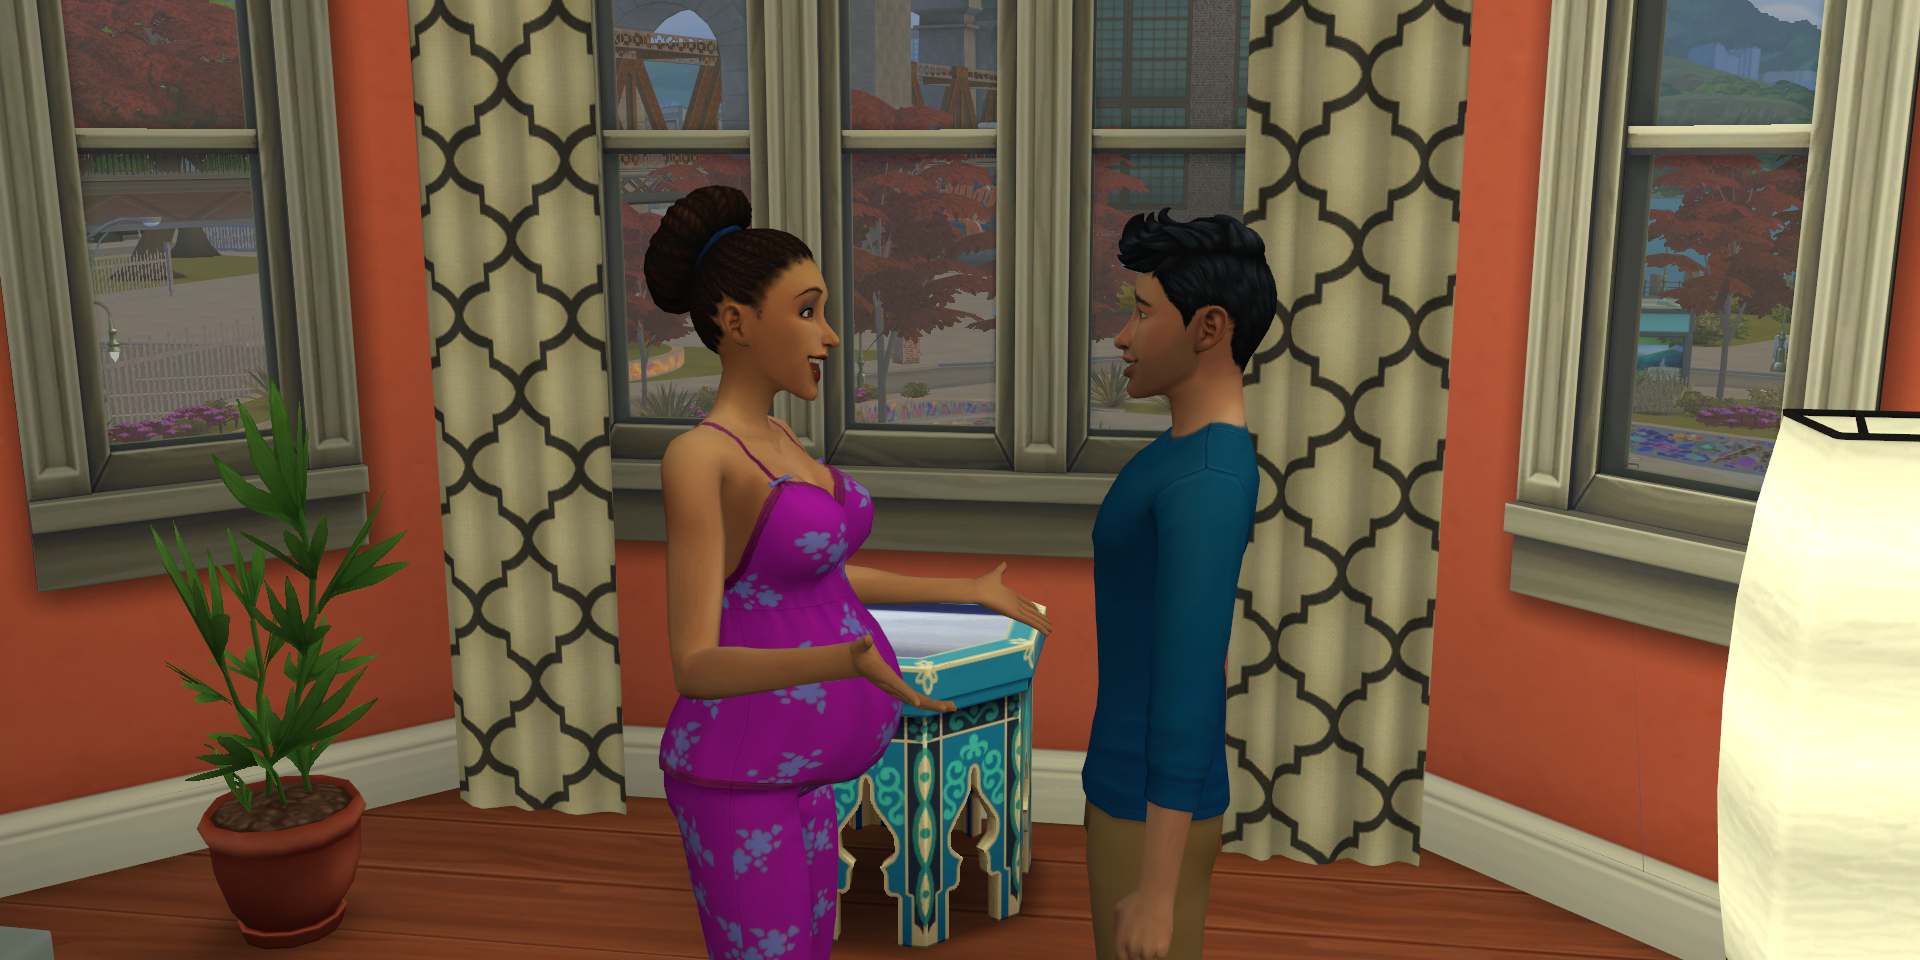 Arun and Jasmeen Bheeda talk in their Sims 4 apartment